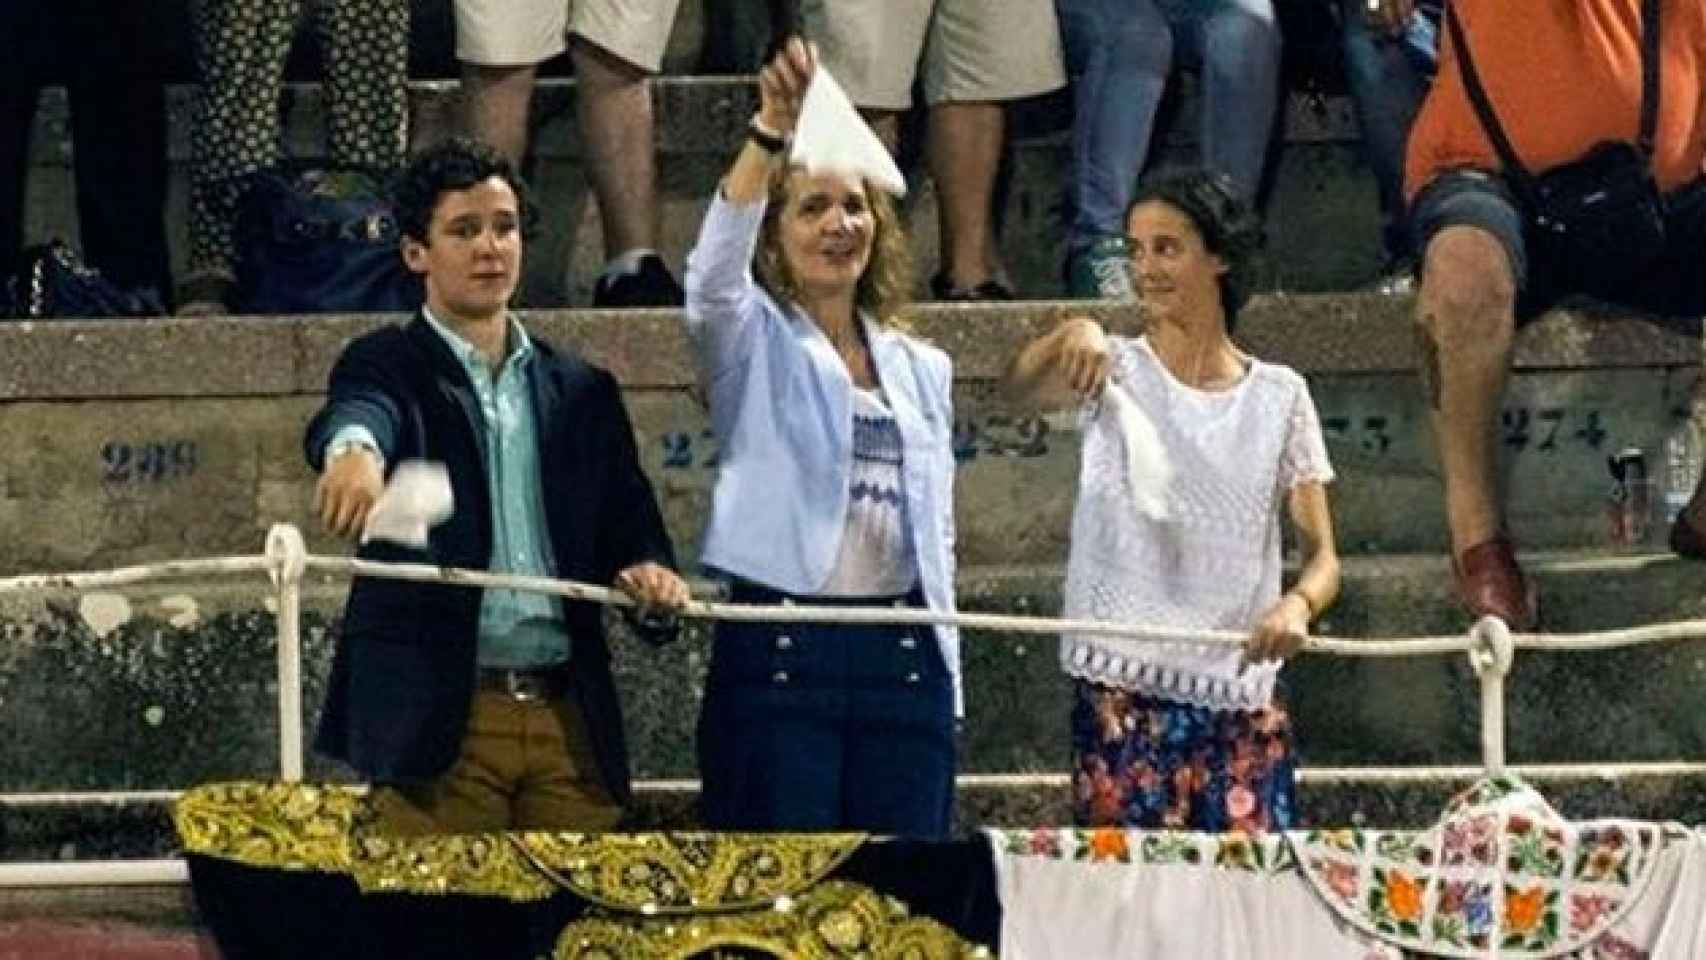 La infanta Elena junto a sus hijos, Froilán y Victoria Federica, en la corrida de la plaza de toros de Palma / EP